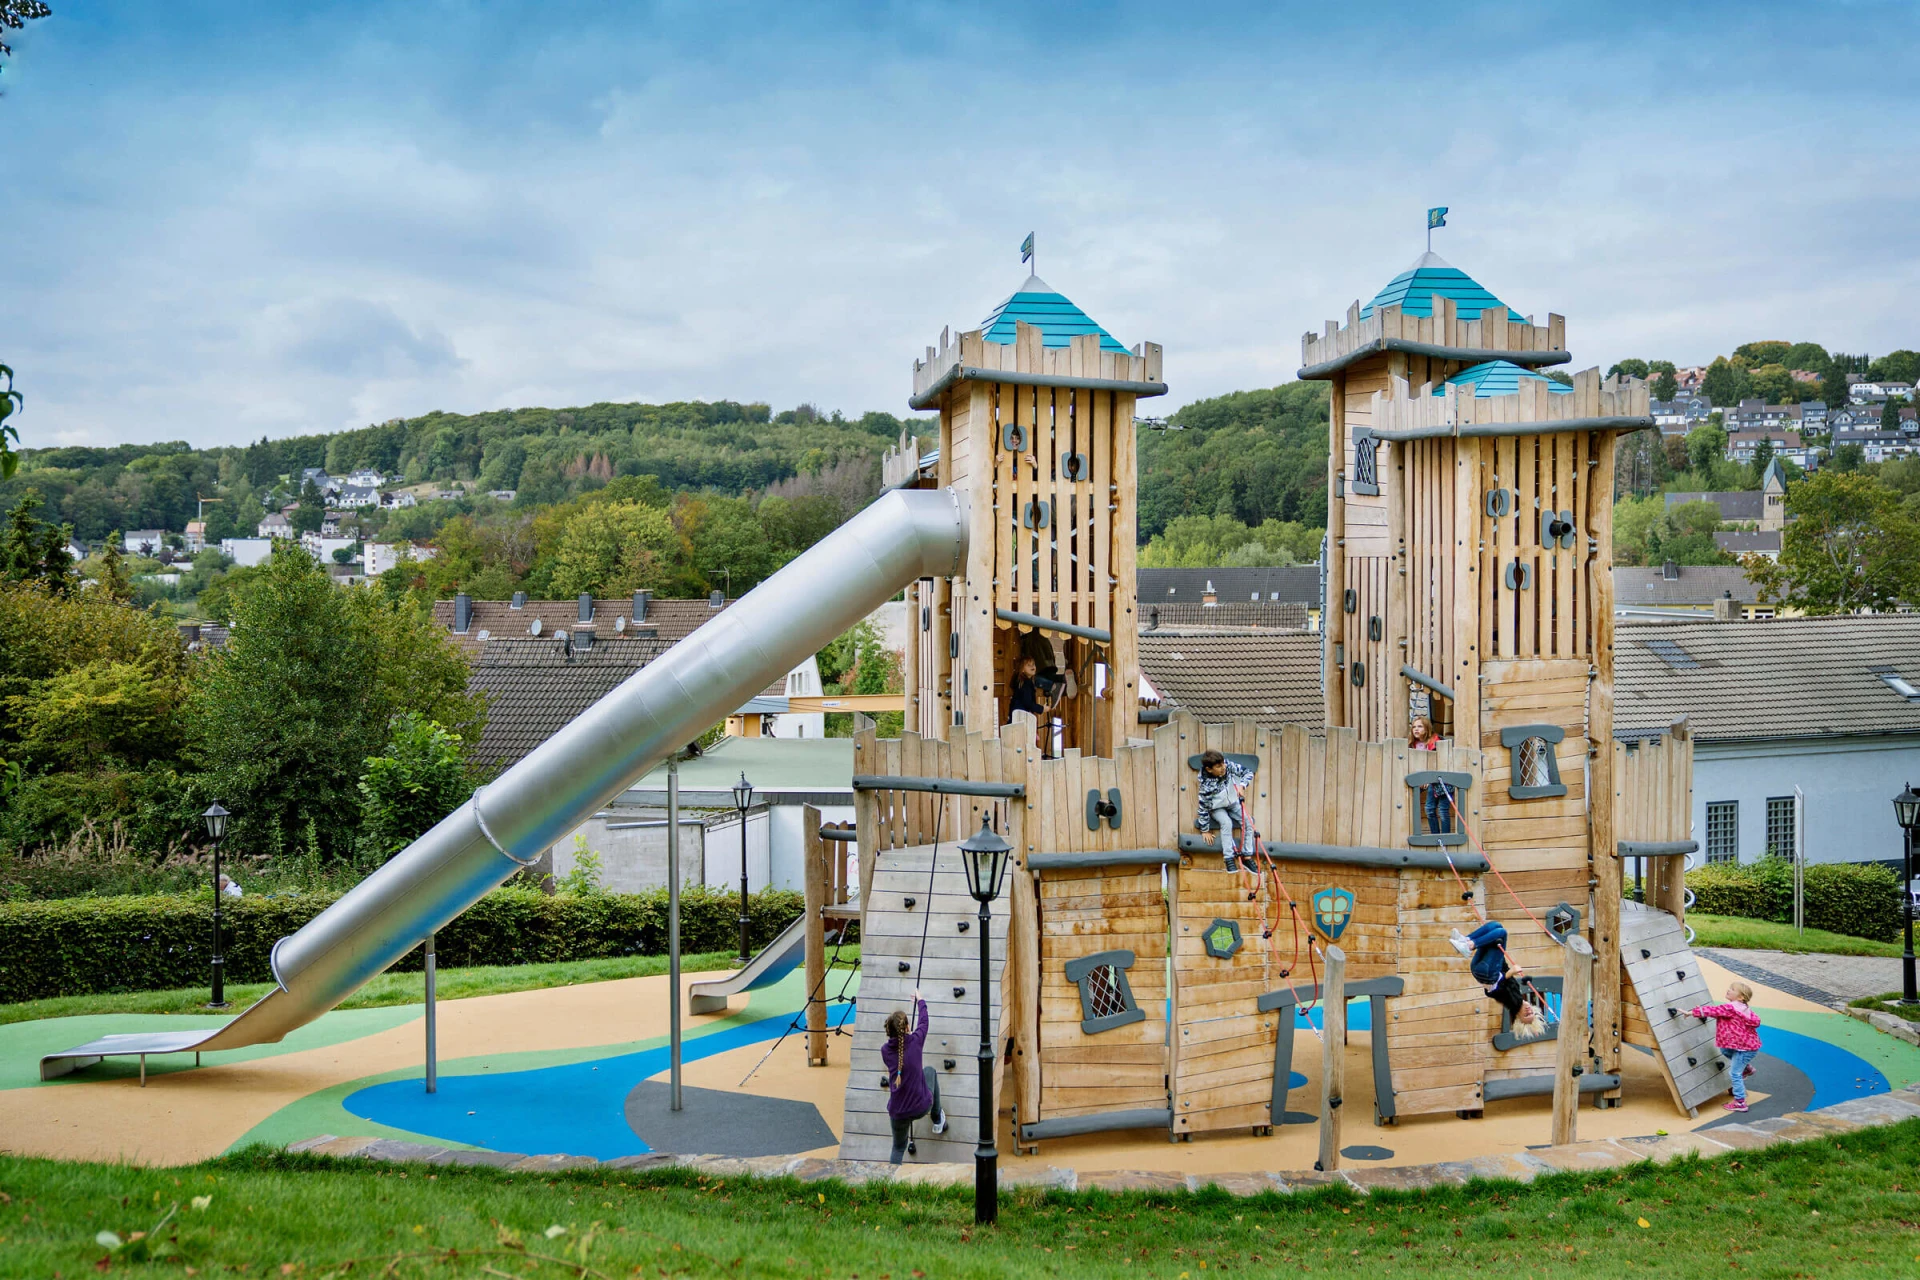 Grote houten kasteel speeltuin met een glijbaan inspiratie